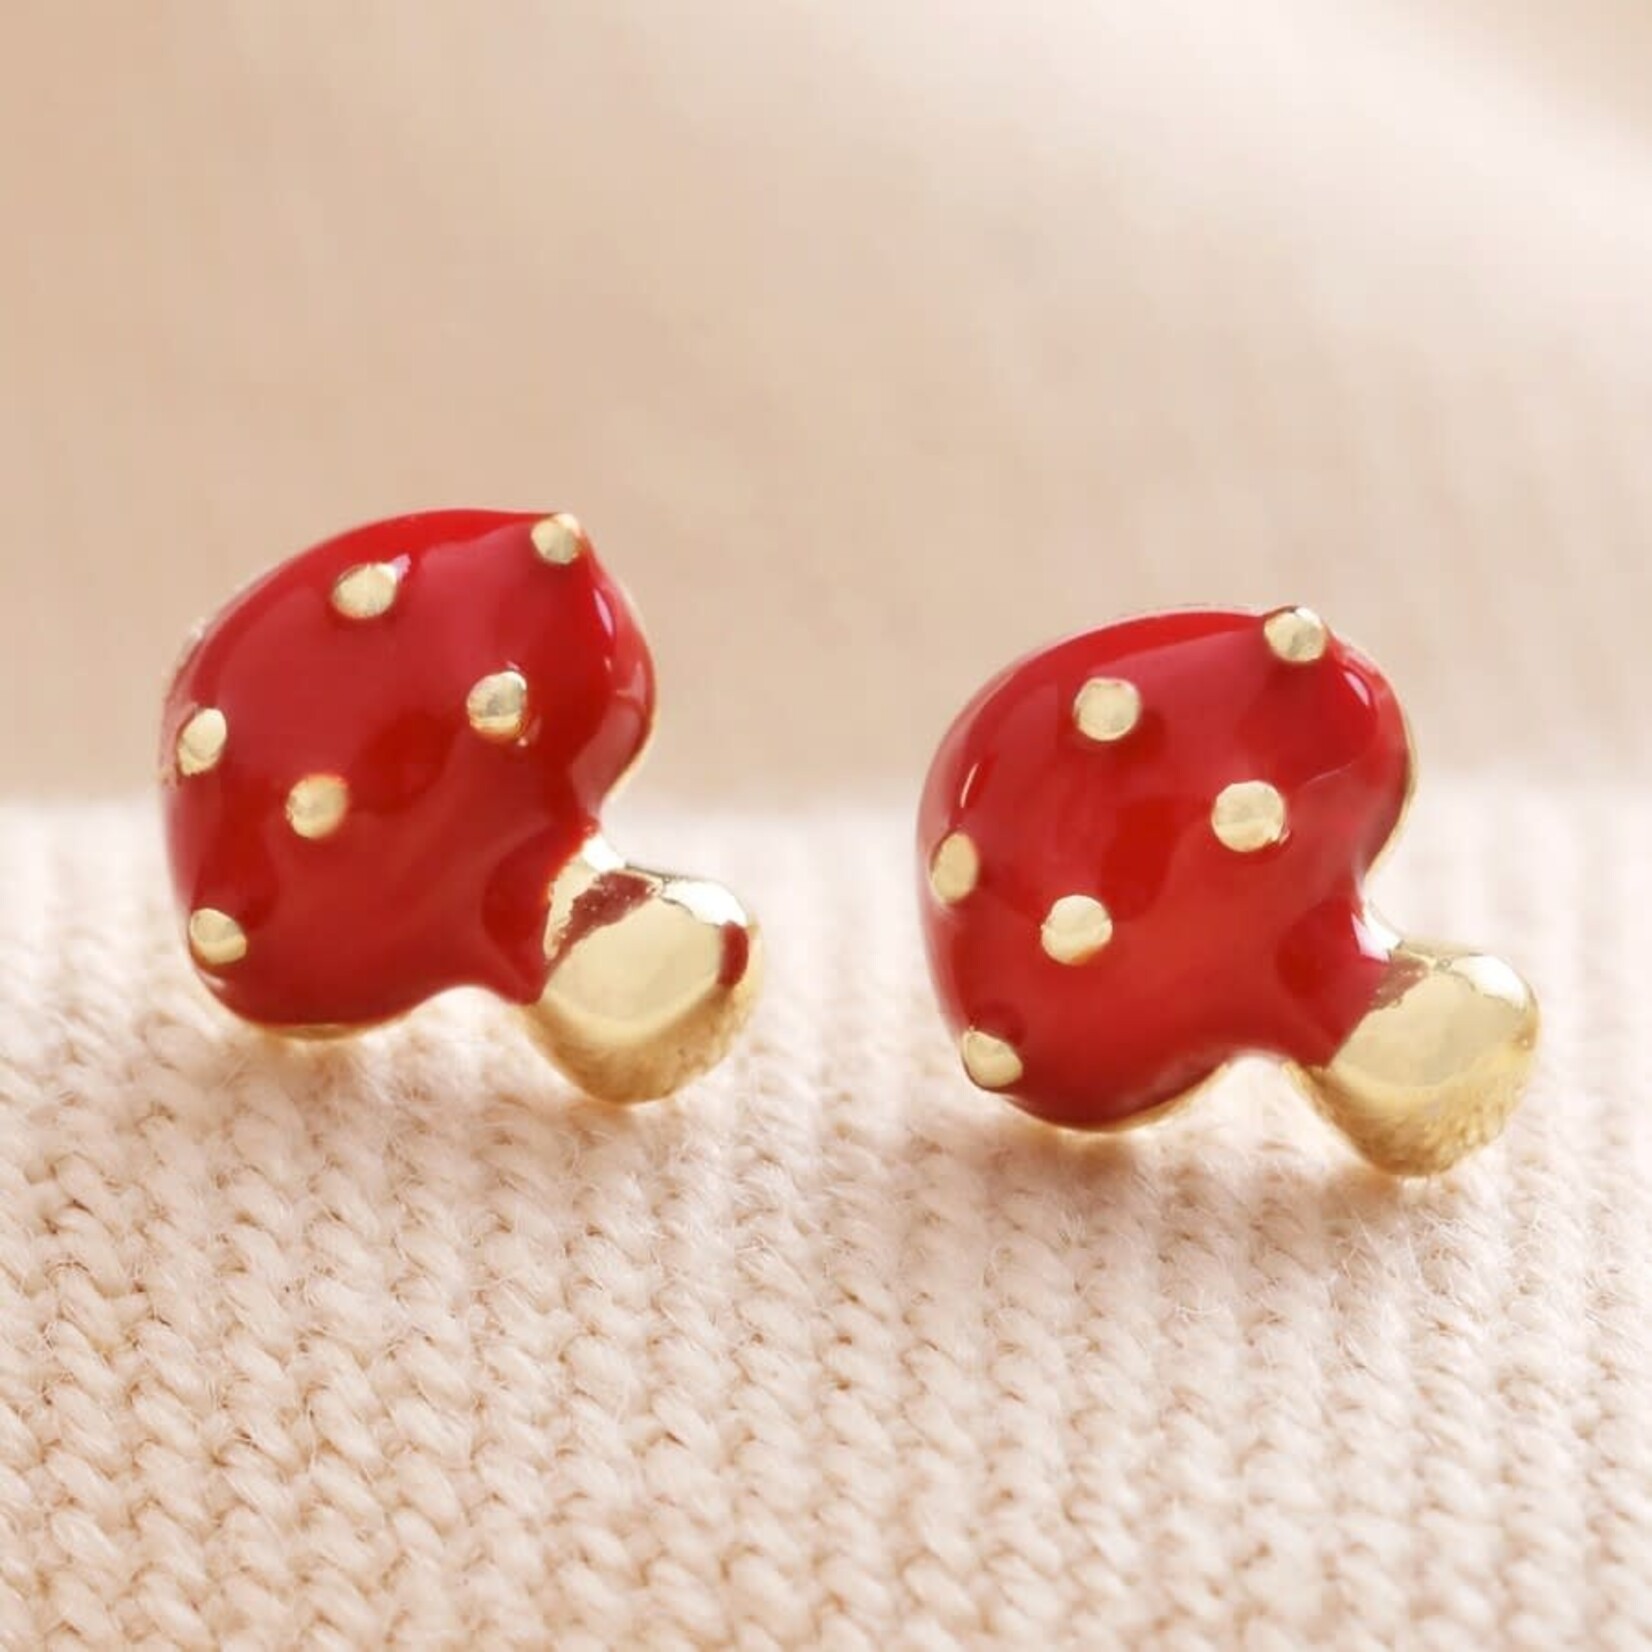 Lisa Angel Red Enamel Mushroom Stud Earrings in Gold